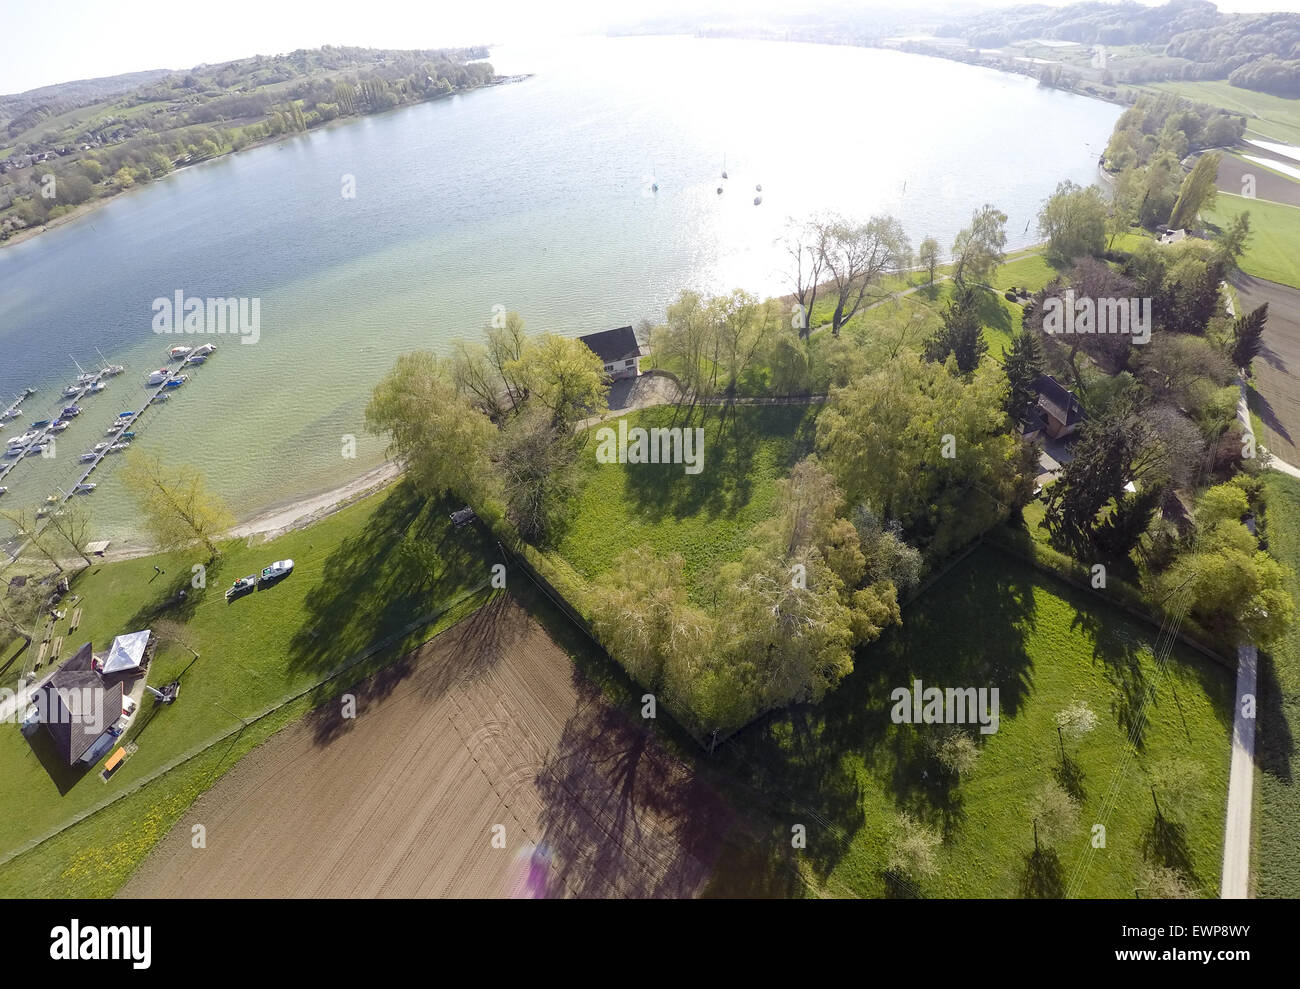 aerial view of sebastian vettel's new boat house. the f1